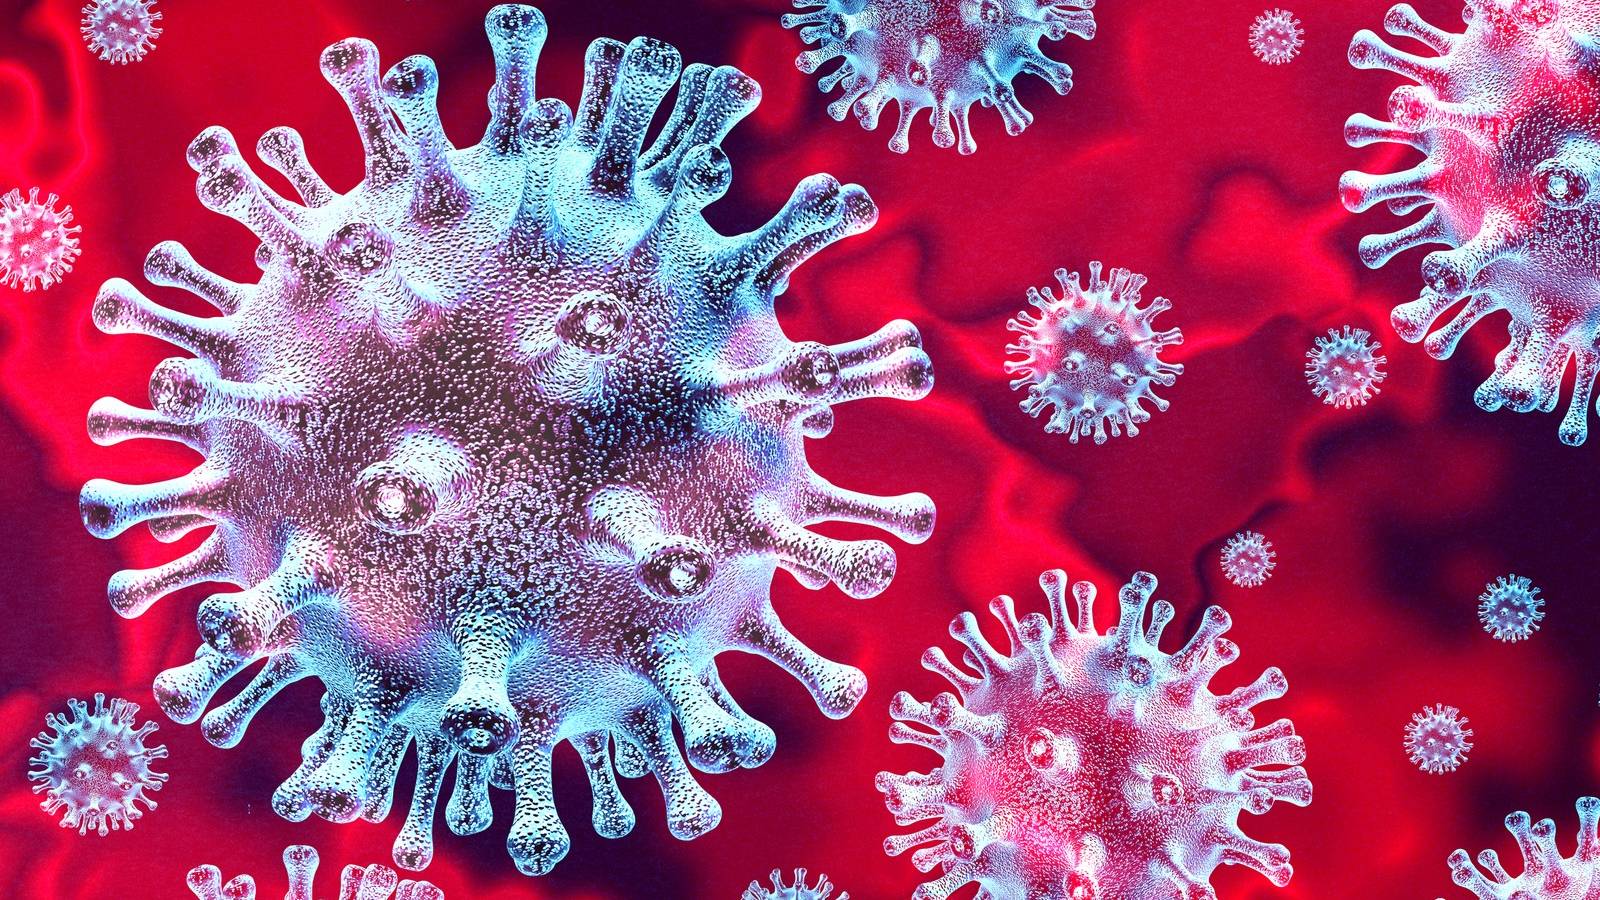 Szczepionka na koronowirusa, dawka 3, oficjalnie zalecana w Europie